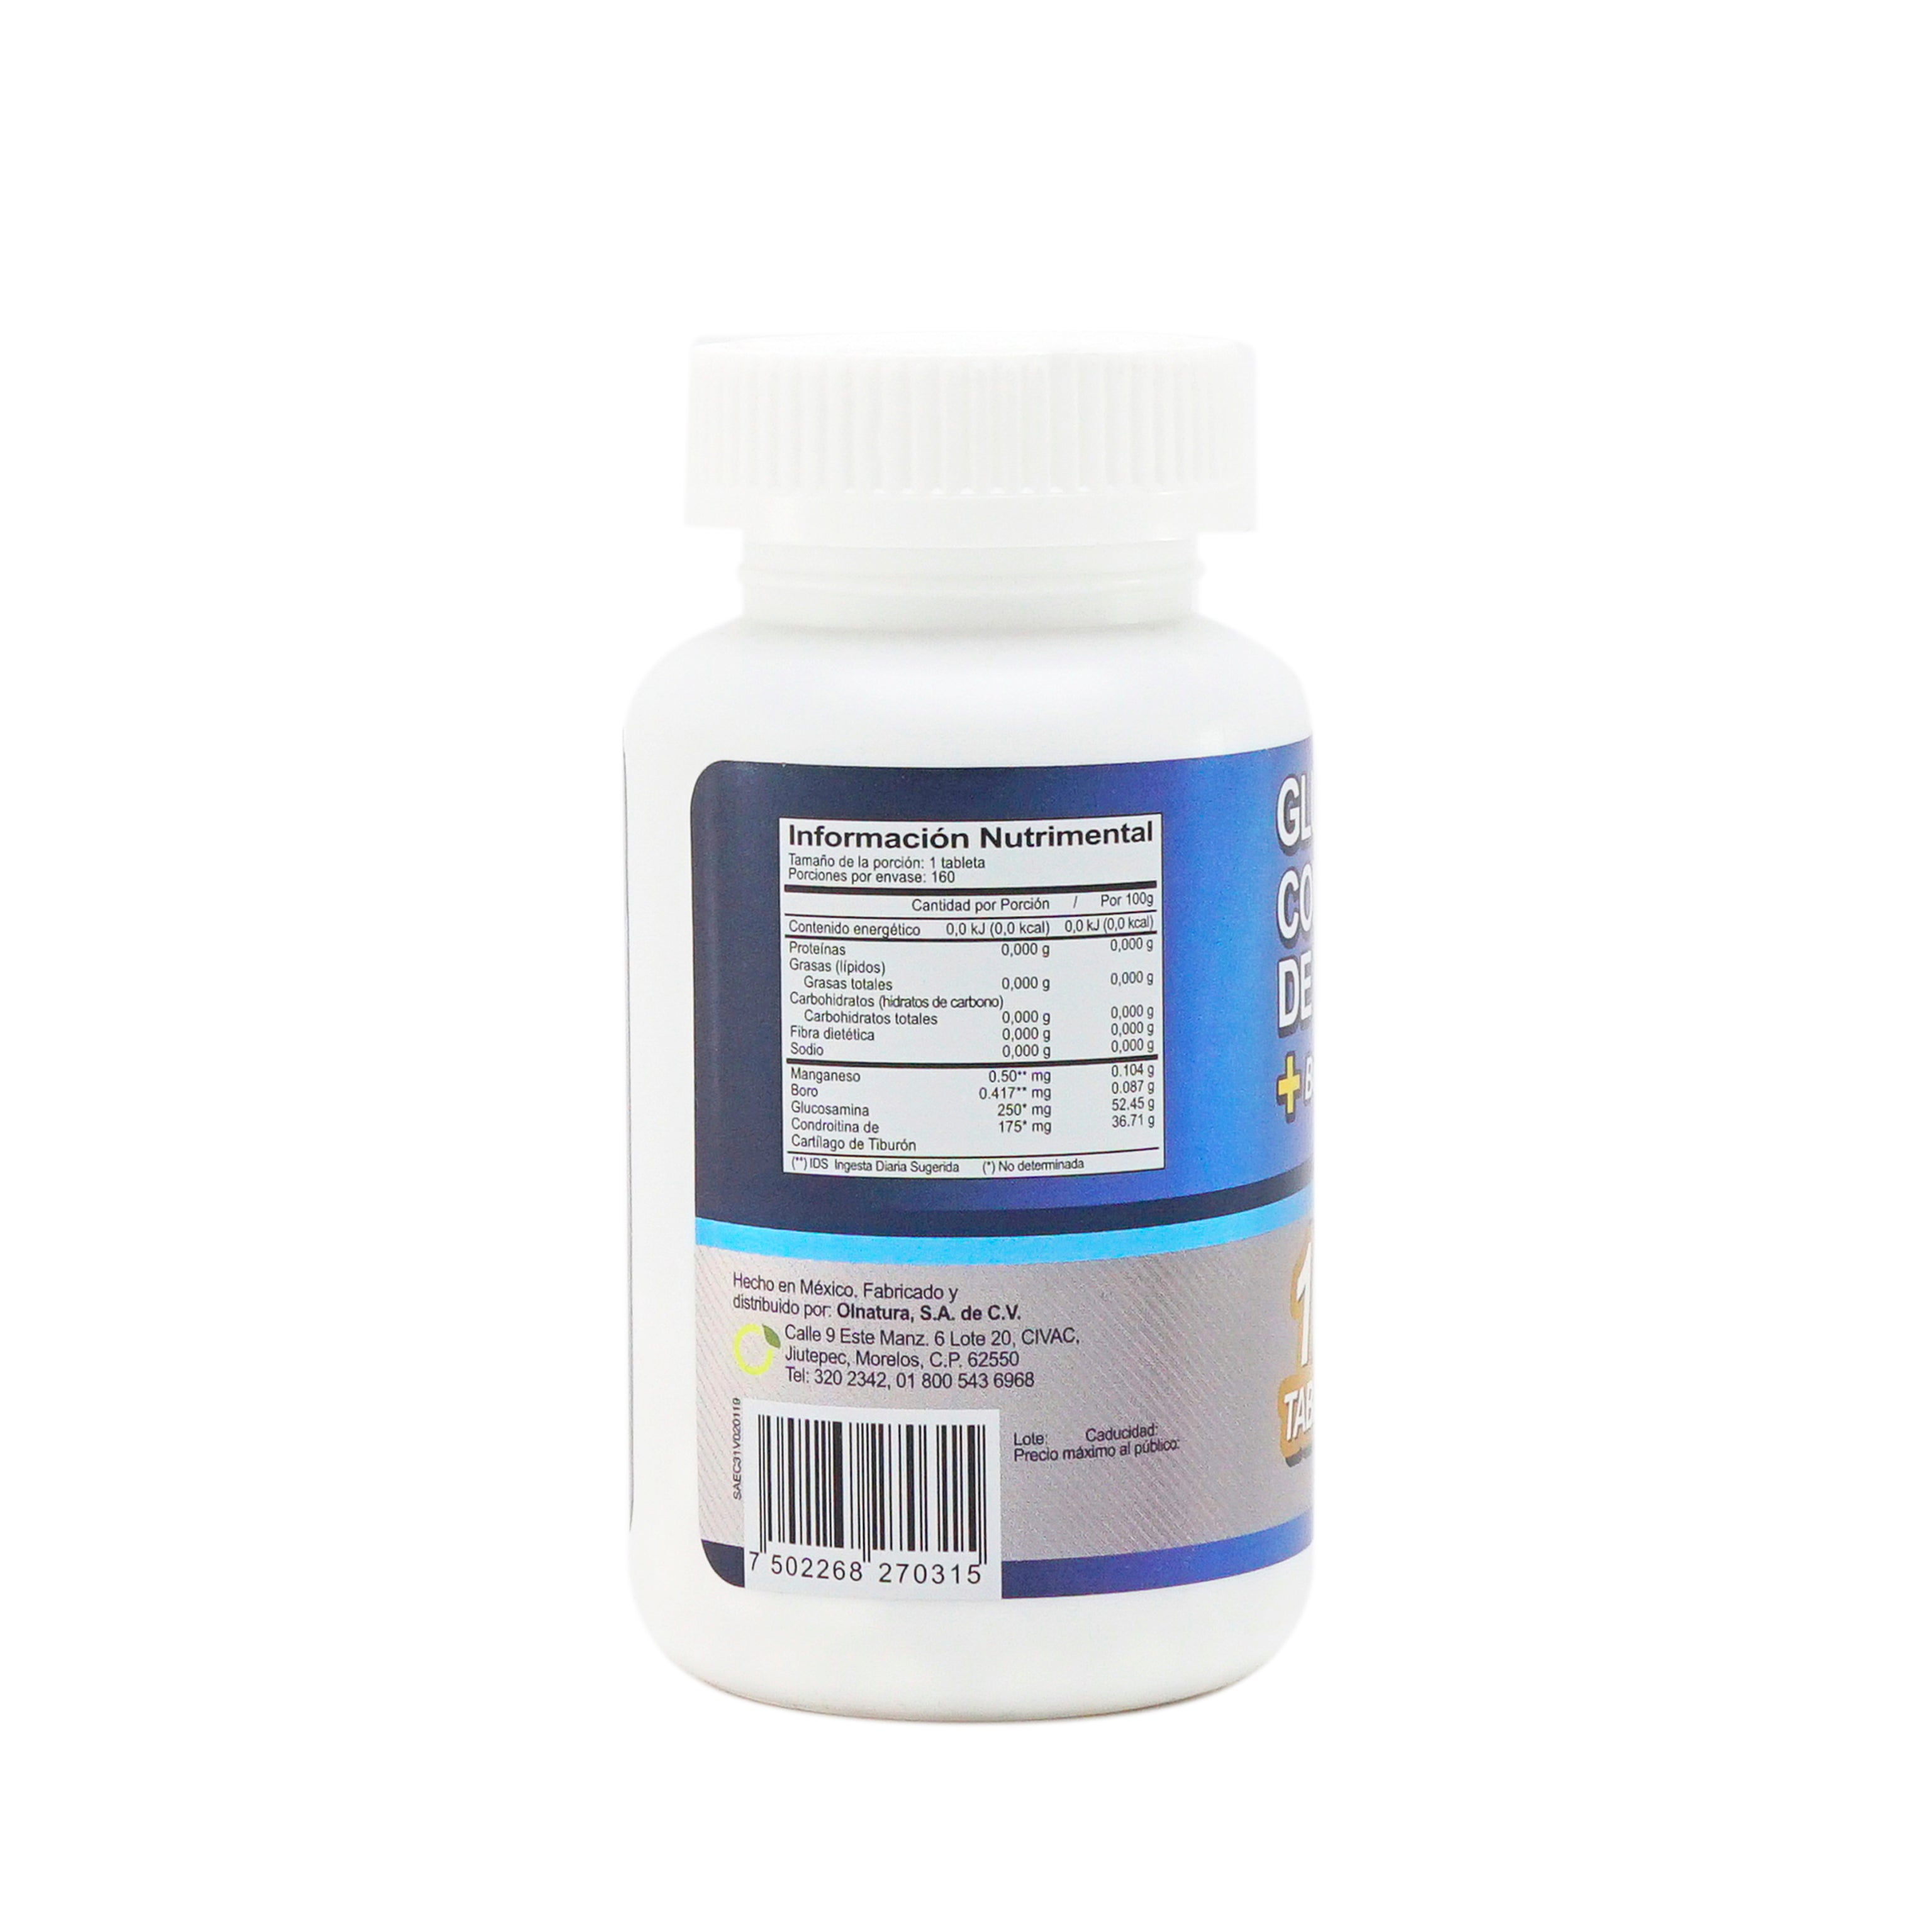 Pack 2 JustFx 120 Cápsulas de Glucosamina Condroitina + Colágeno y Zin –  Olnatura Just